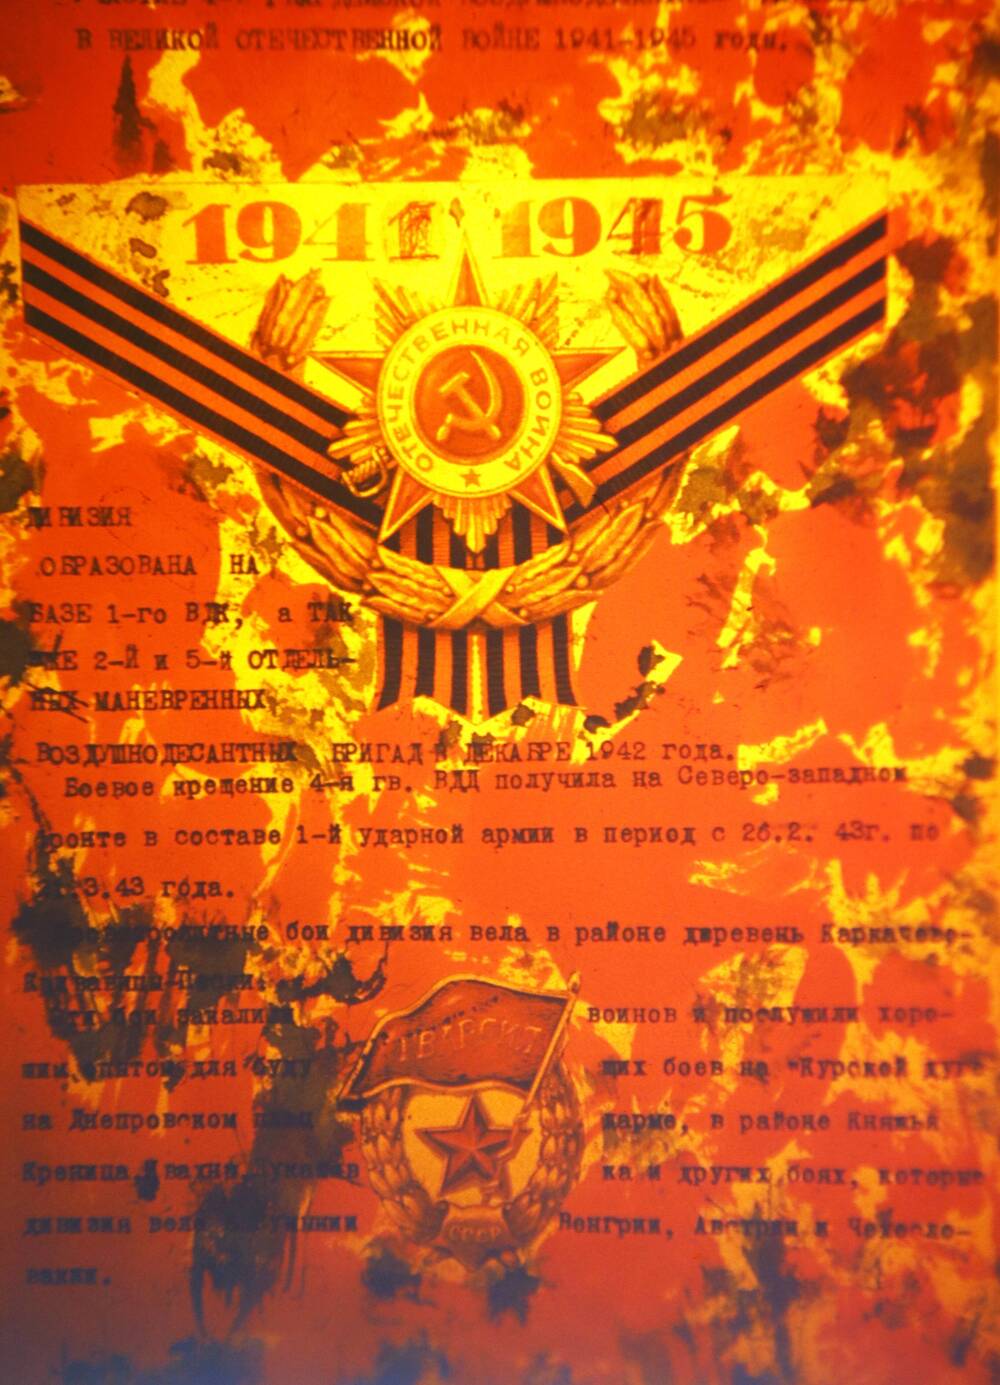 Слайд пластмассовый, где на красном фоне в тексте указаны периоды формирования и участия в боевых действиях 4-й ВДД 1941-1945 годы.